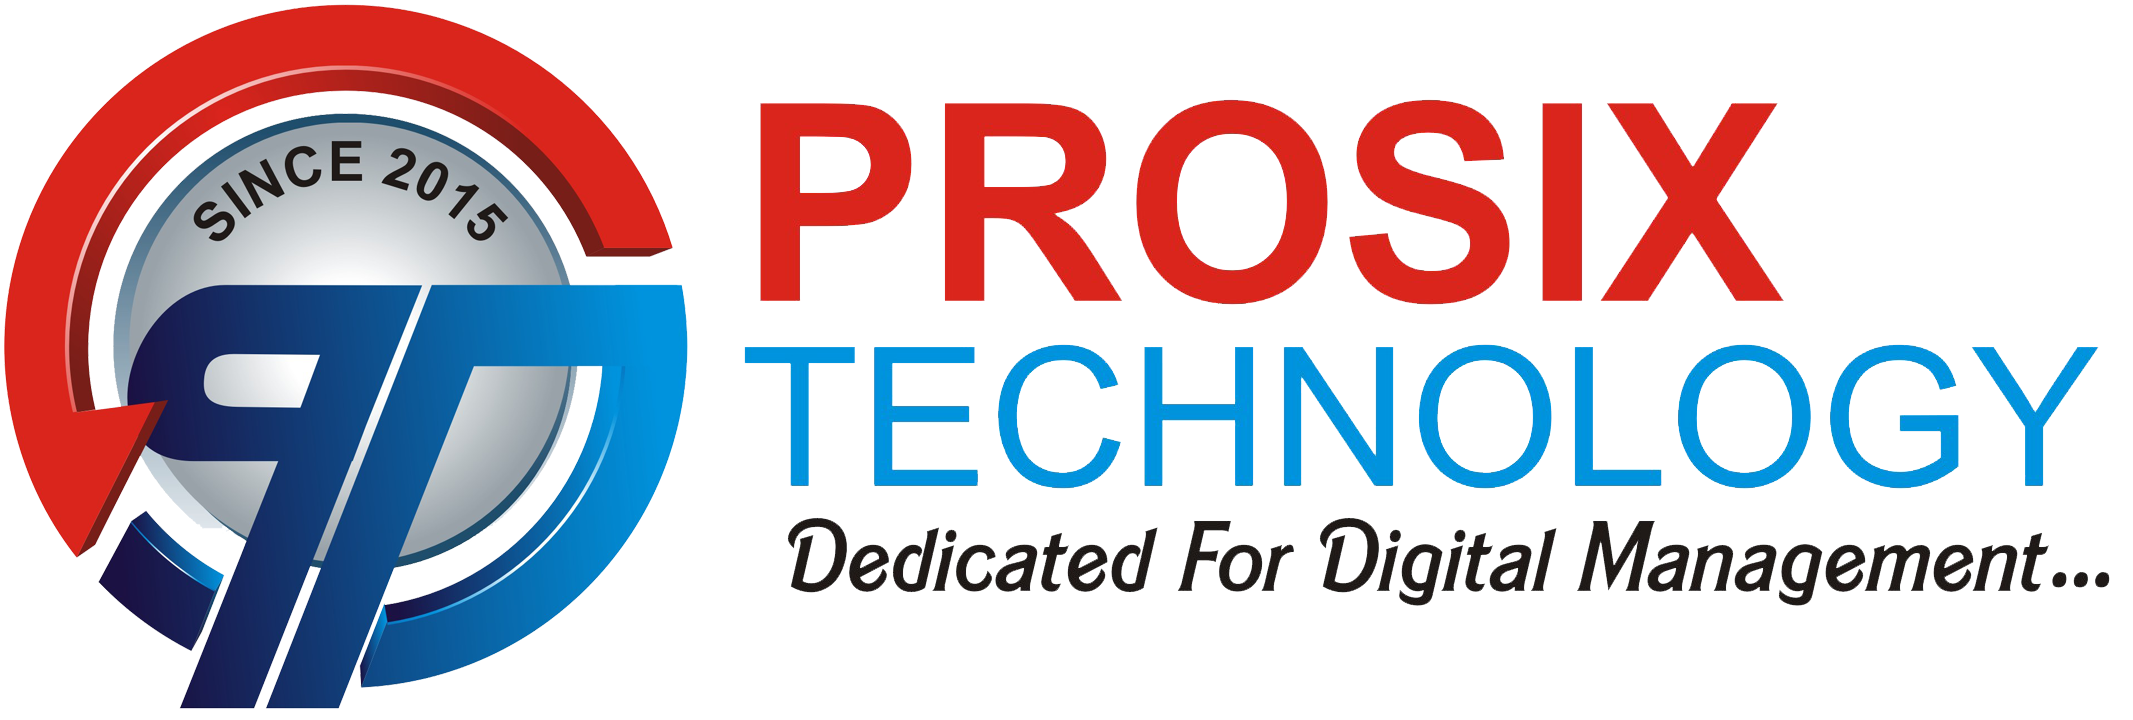 Prosix Technology